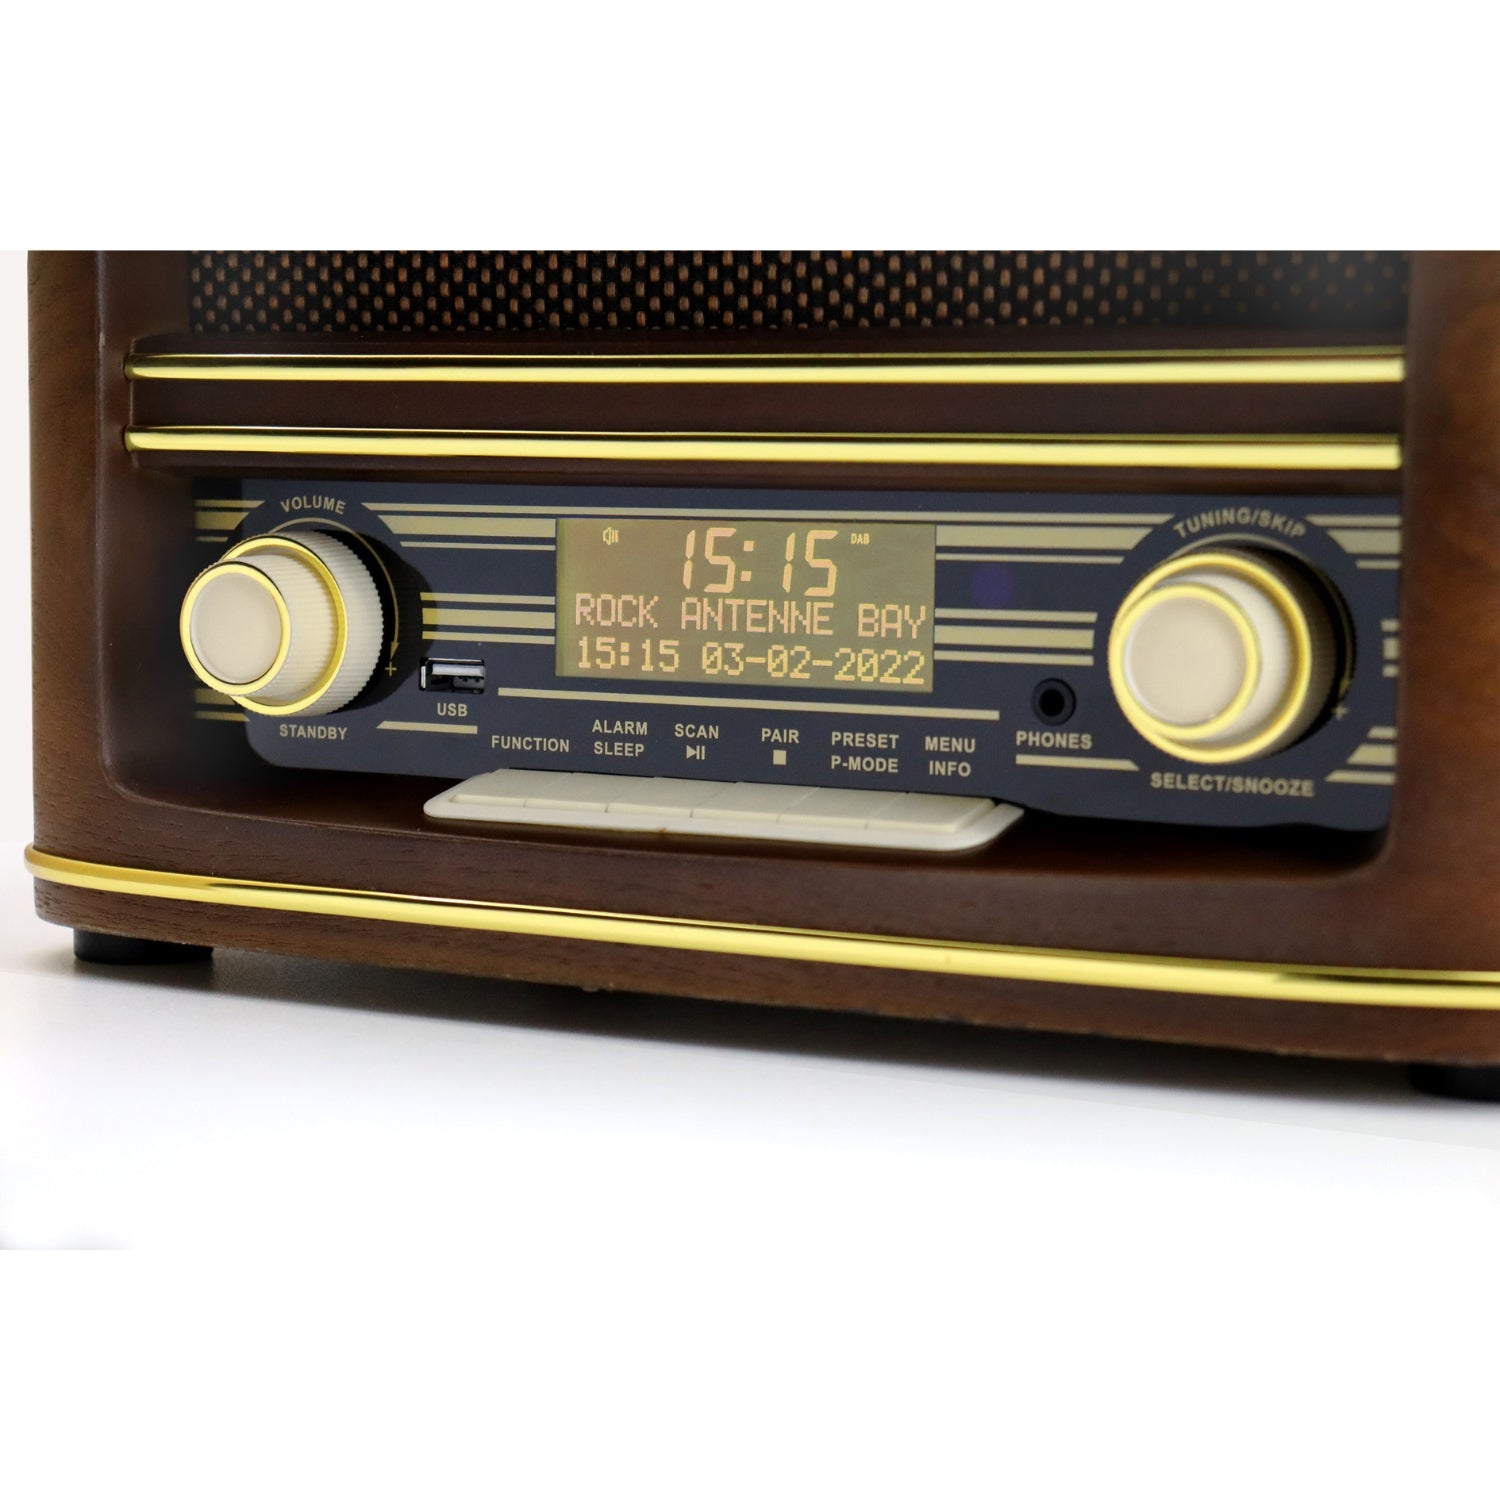 Soundmaster NR961 nostalgie rétro stéréo DAB + Radio numérique système Compact lecteur CD stéréo MP3 USB Bluetooth AUX-IN égaliseur